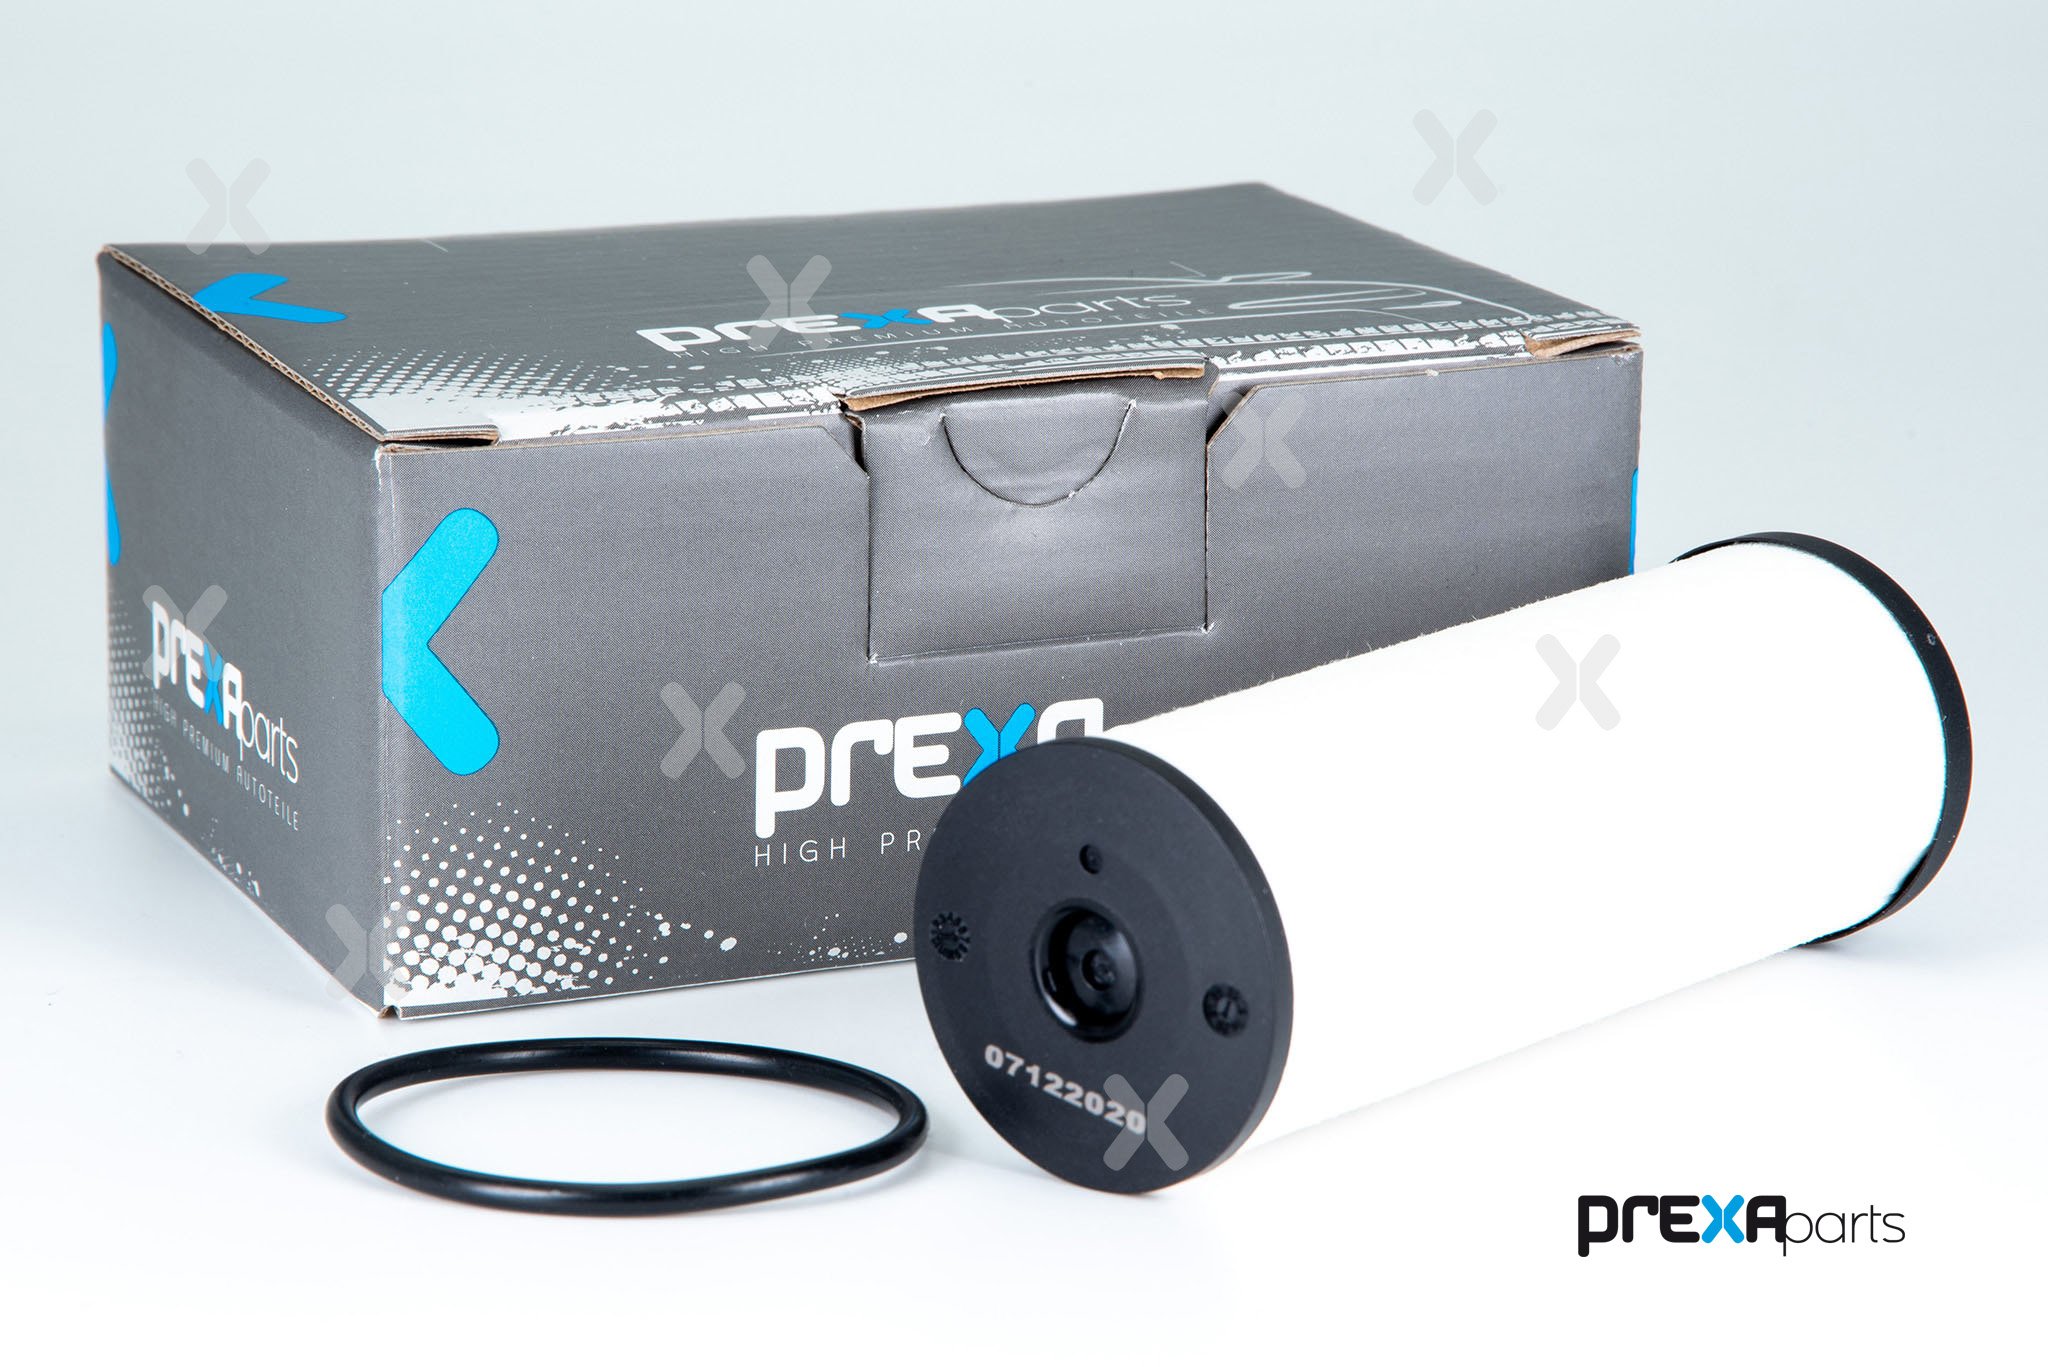 PREXAparts P120102